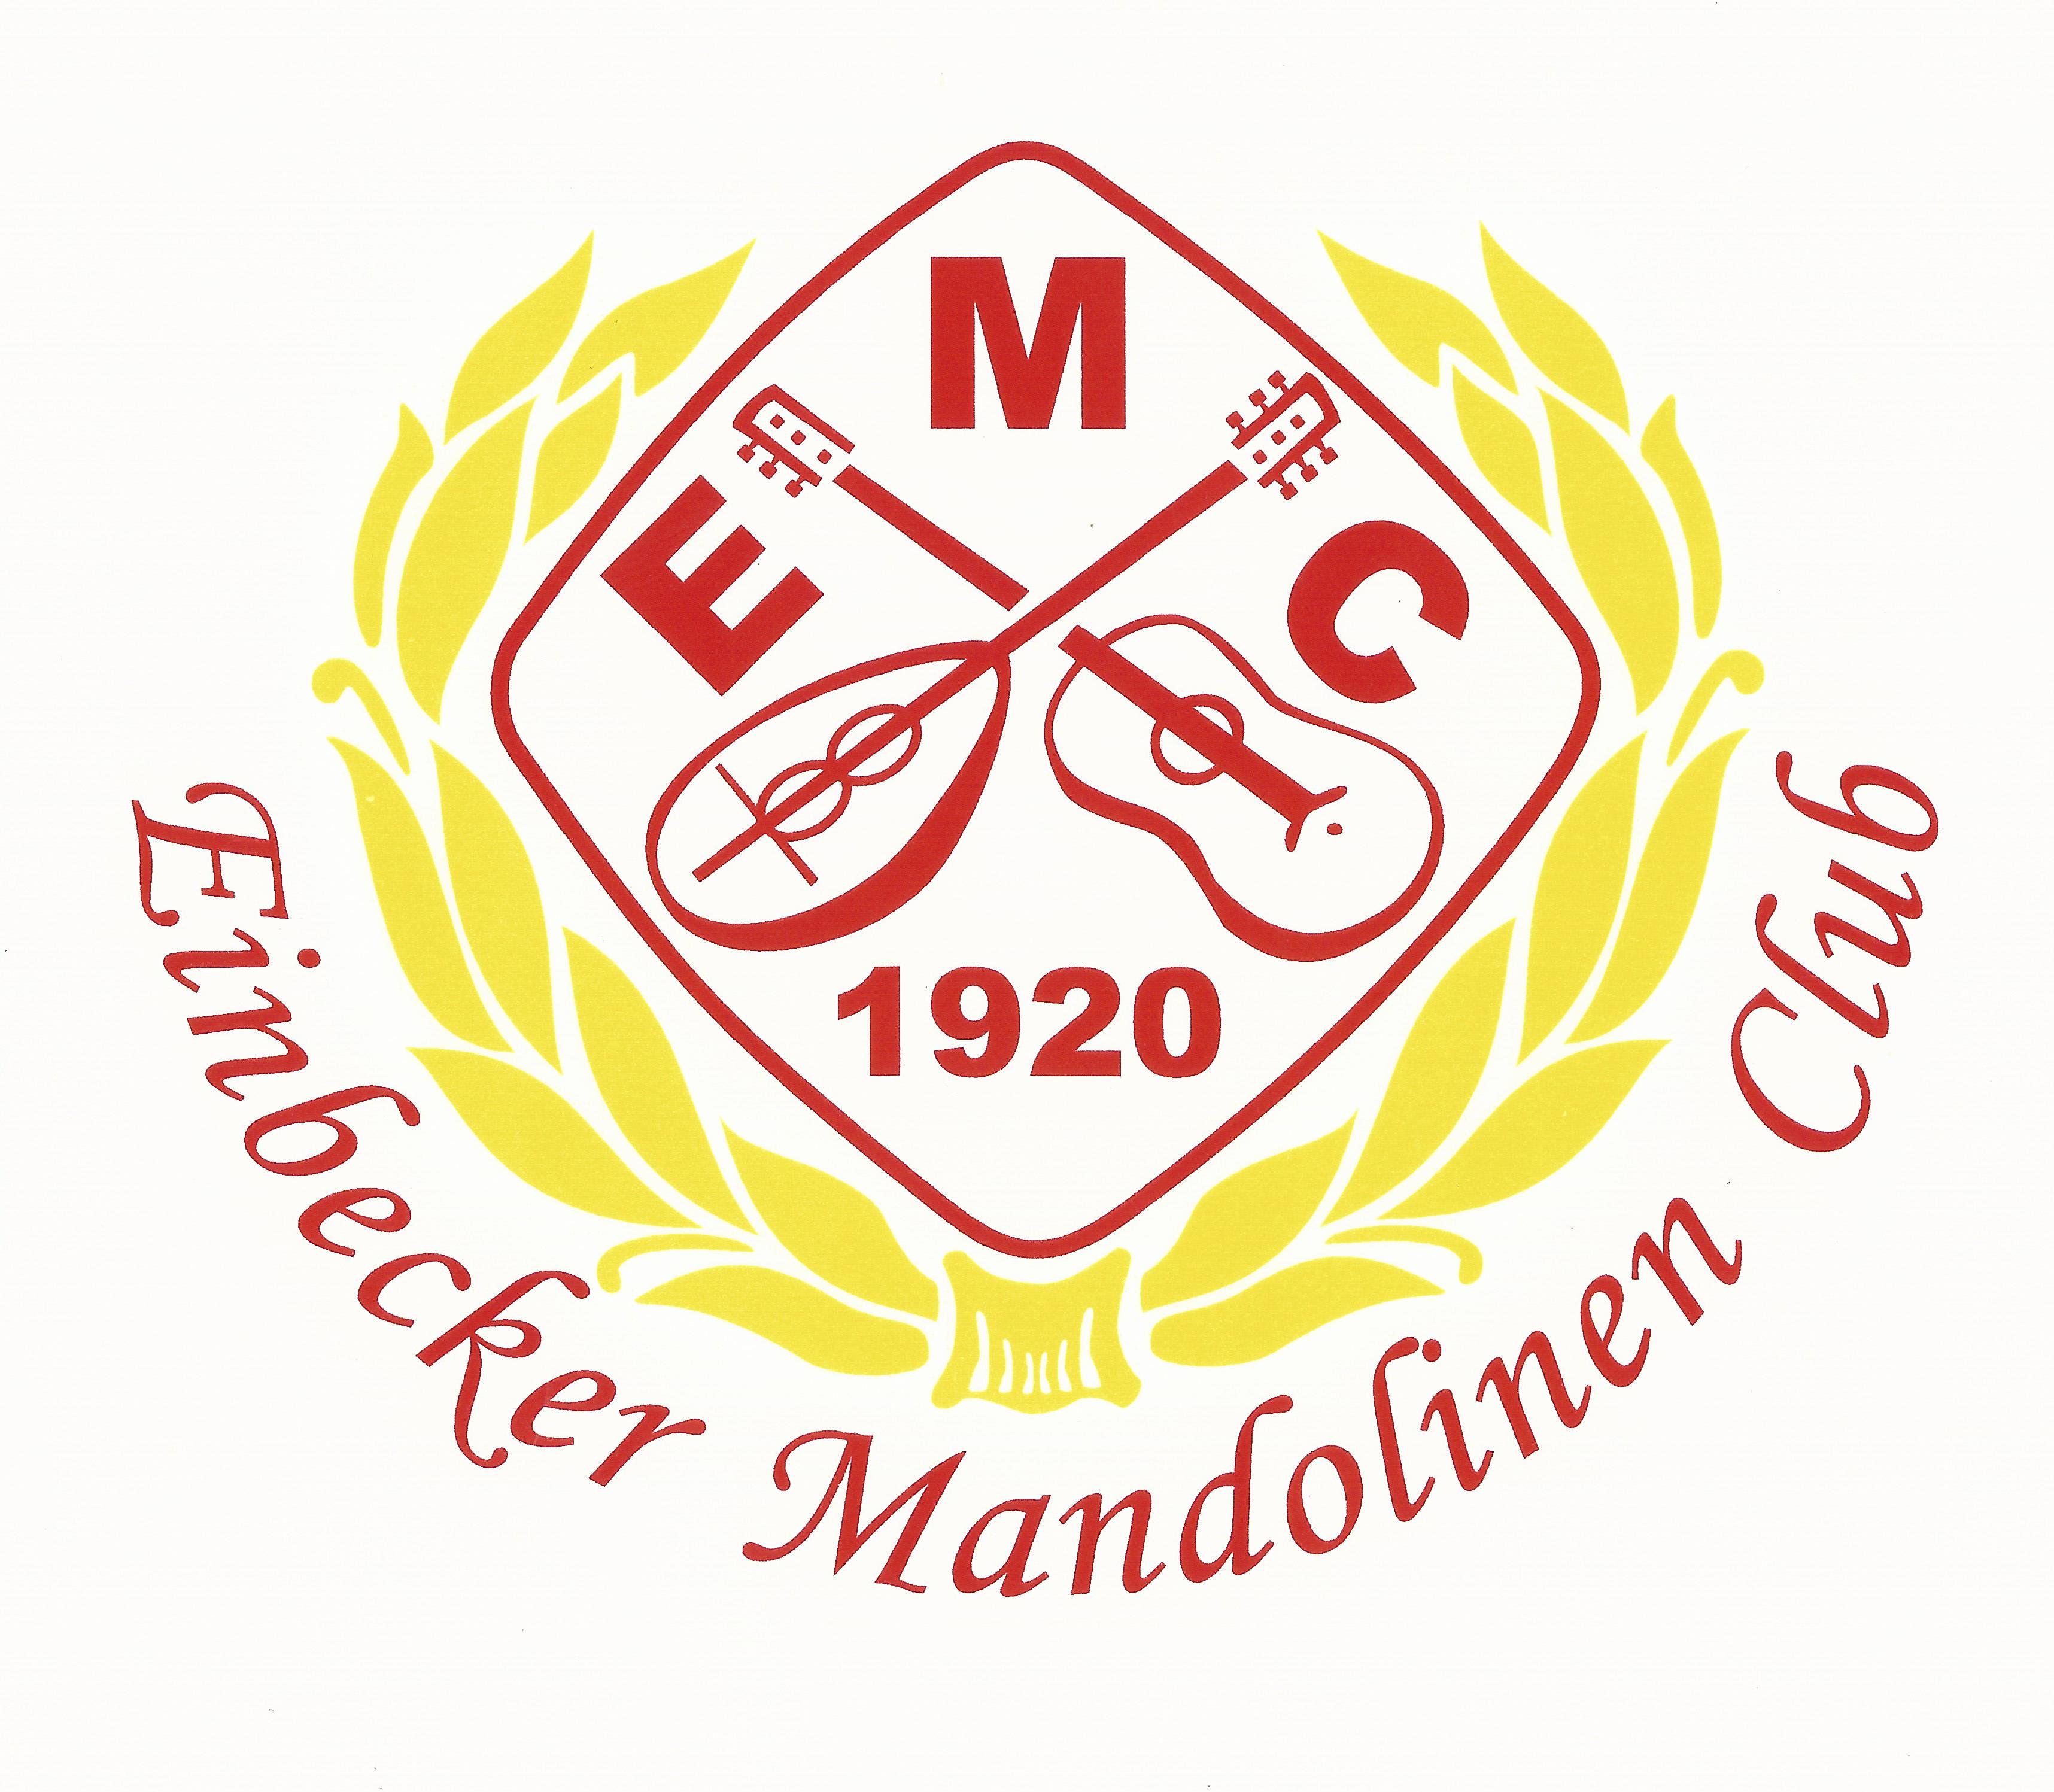 (c) Einbecker-mandolinenclub.de